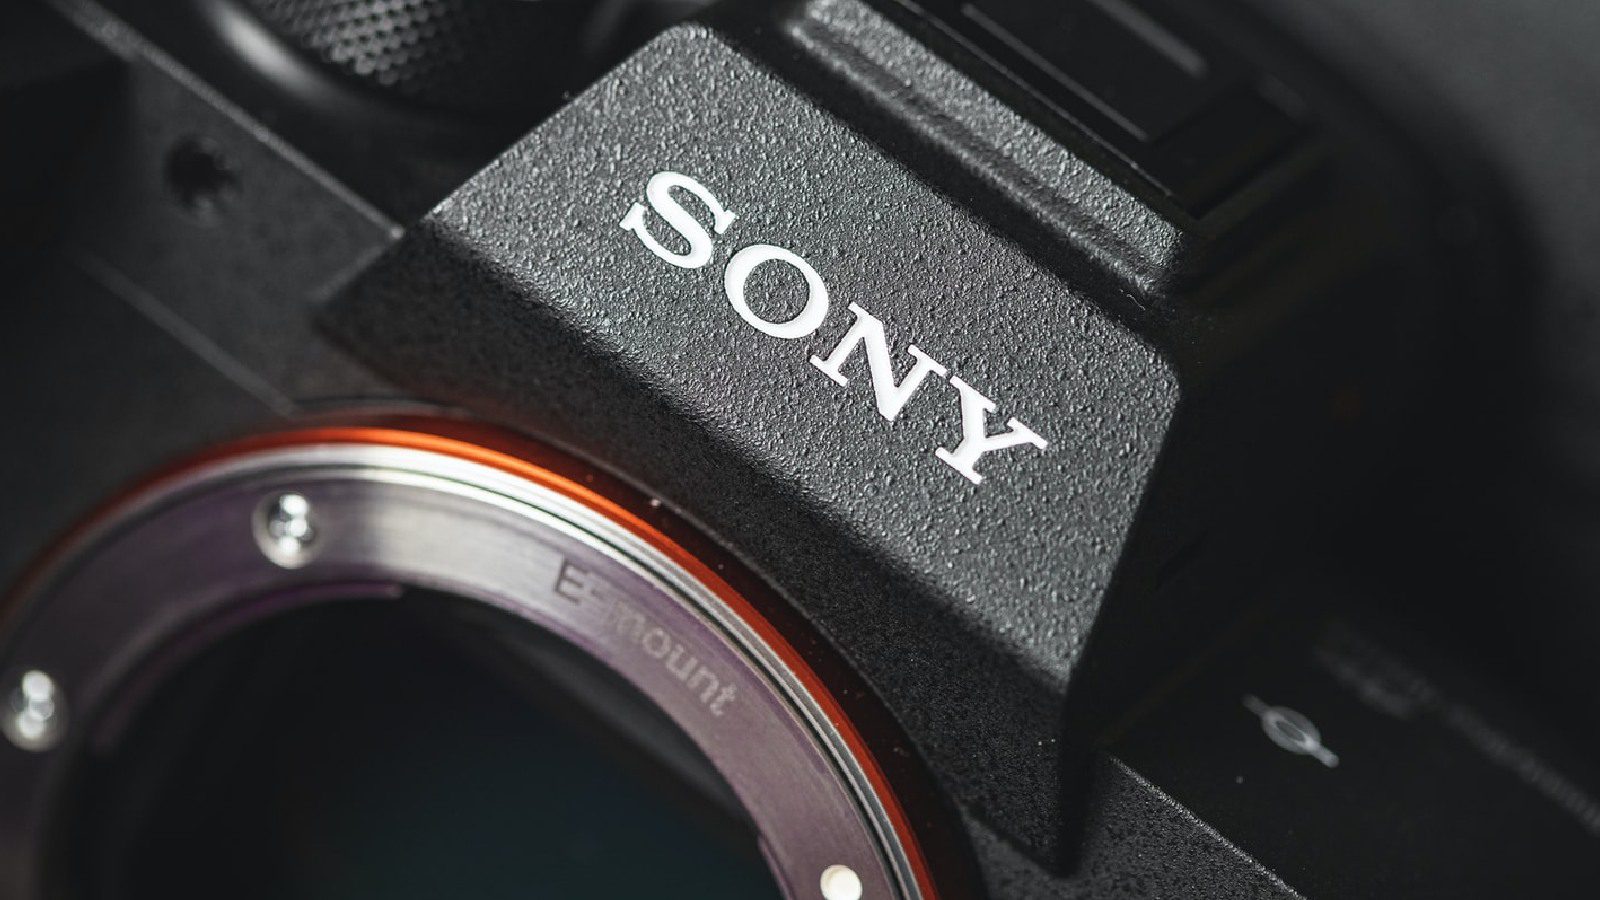 Серия камер A7 будет прекращена из-за нехватки чипов, сообщает Sony